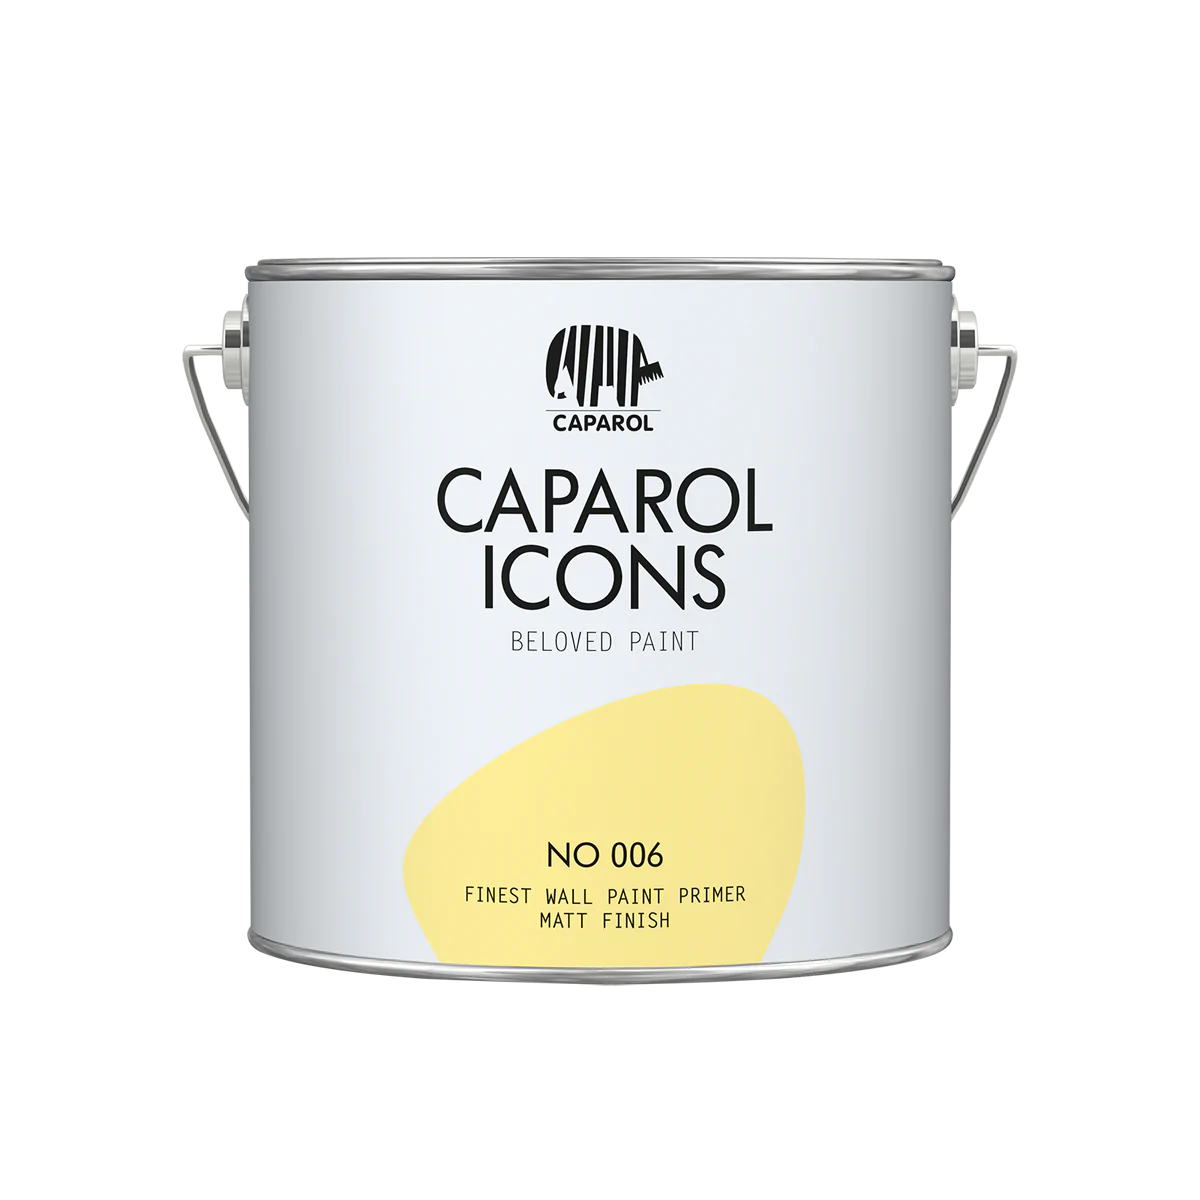 Caparol ICONS FINEST WALL PRIMER NO 006, 2,5l